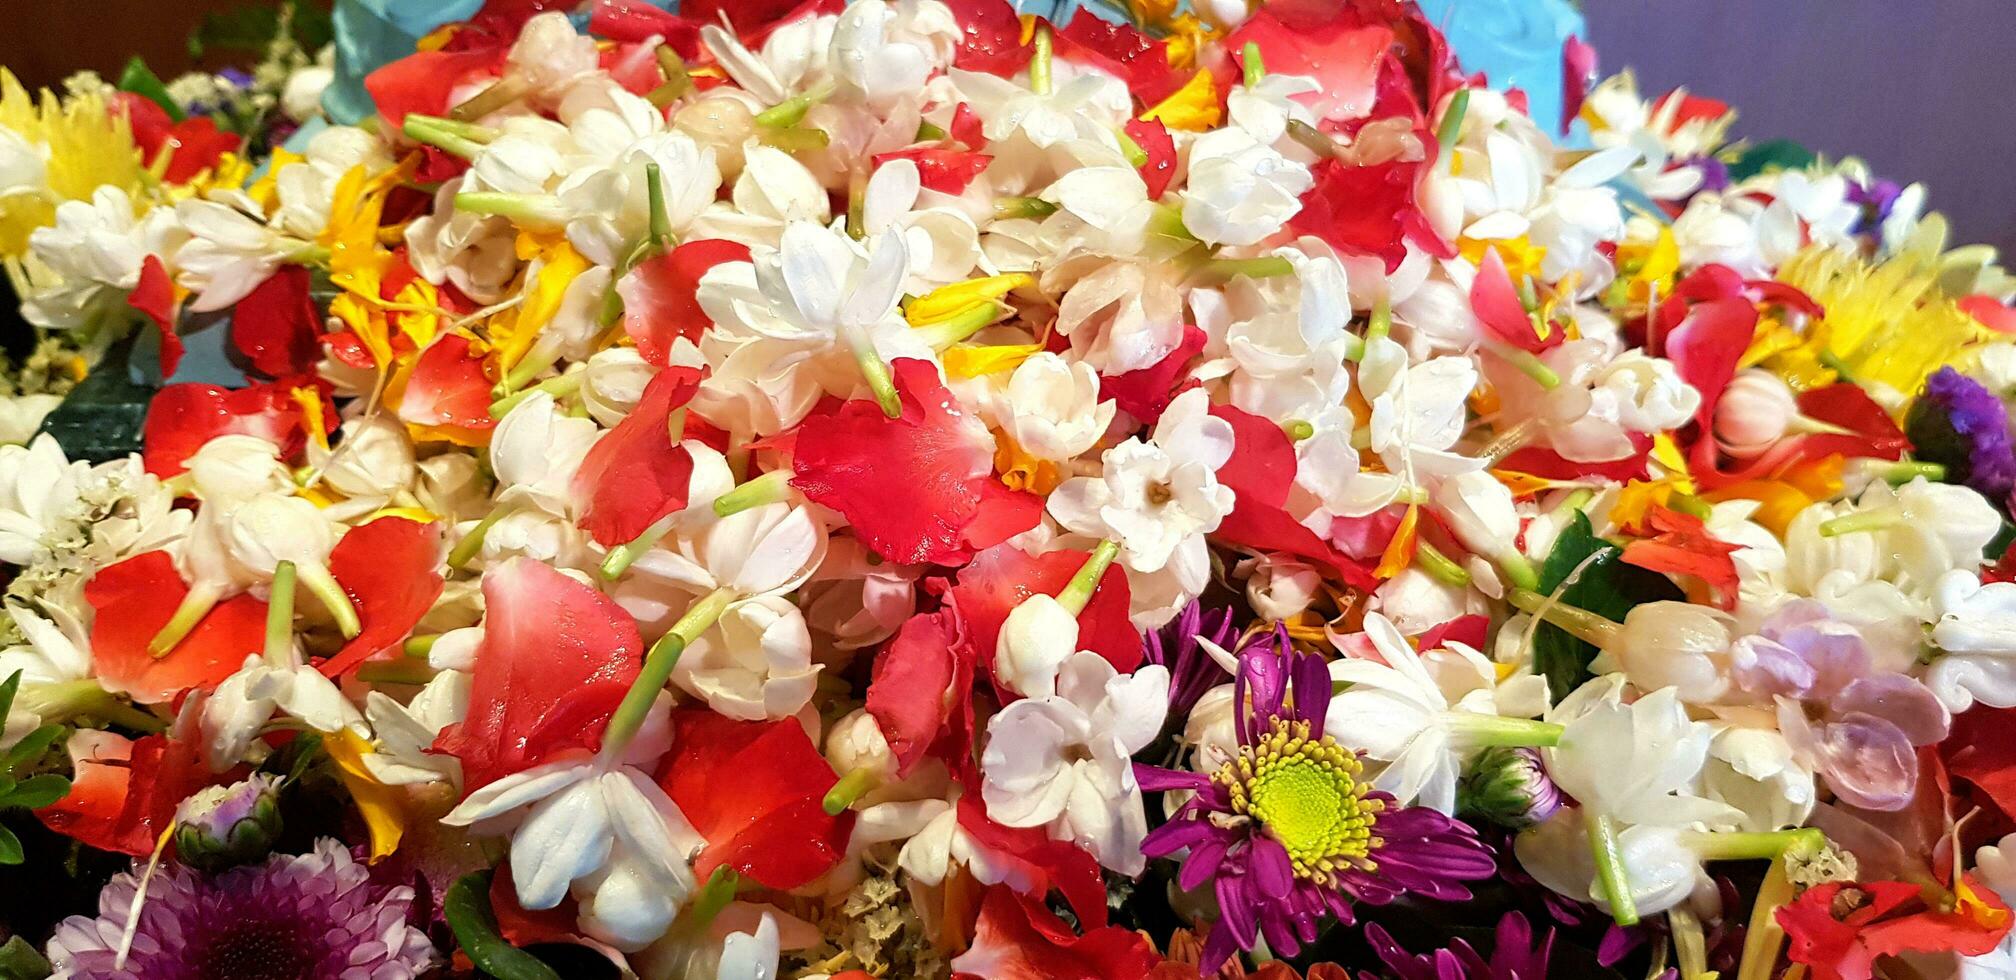 schön Blume mit Jasmin, Rose lila Lilly und Wasser fallen auf ihnen. Feier und Thailand Kultur zum Songkran Festival foto